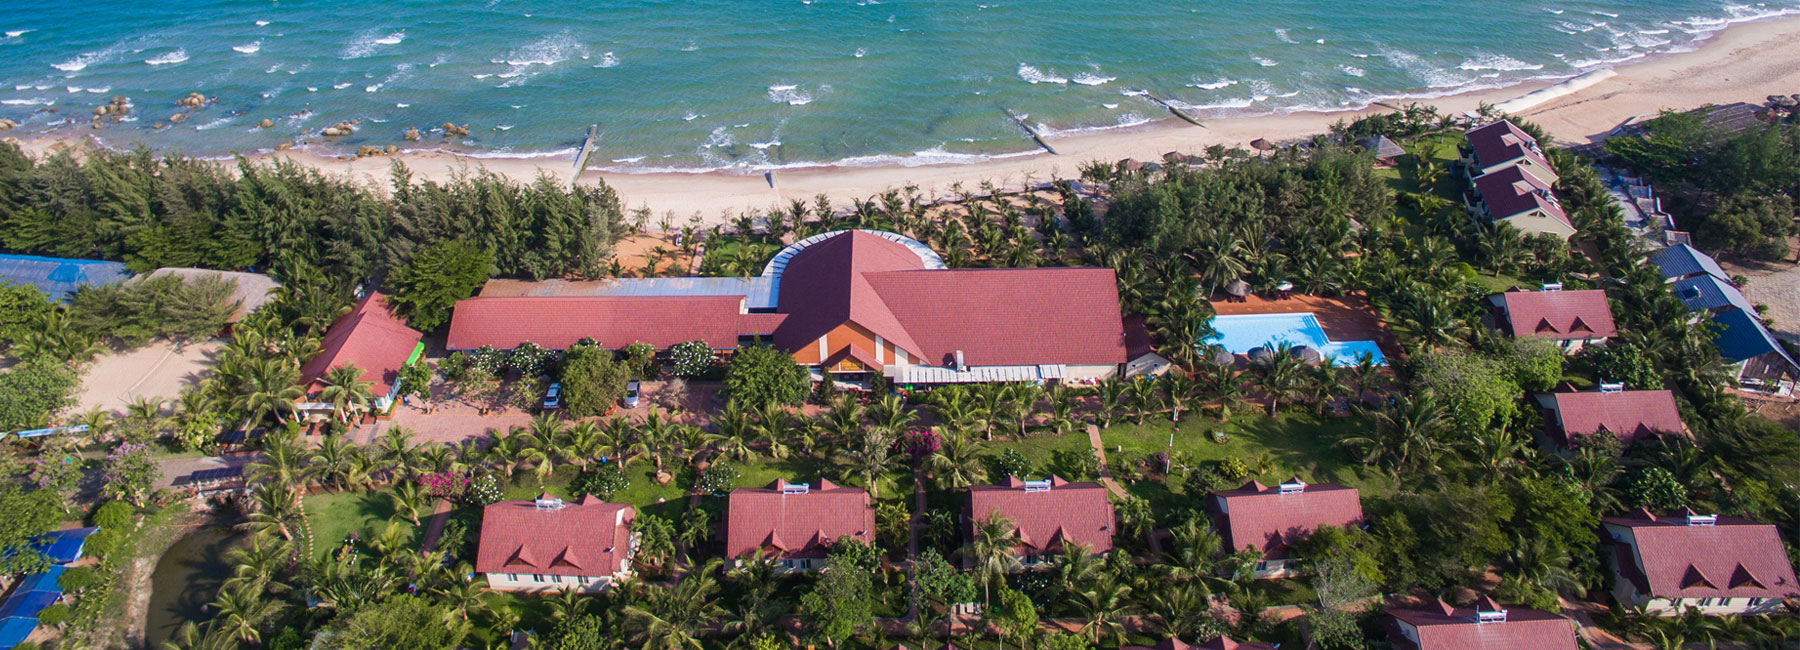 Review chi tiết Hương Phong - Hồ Cốc Beach Resort